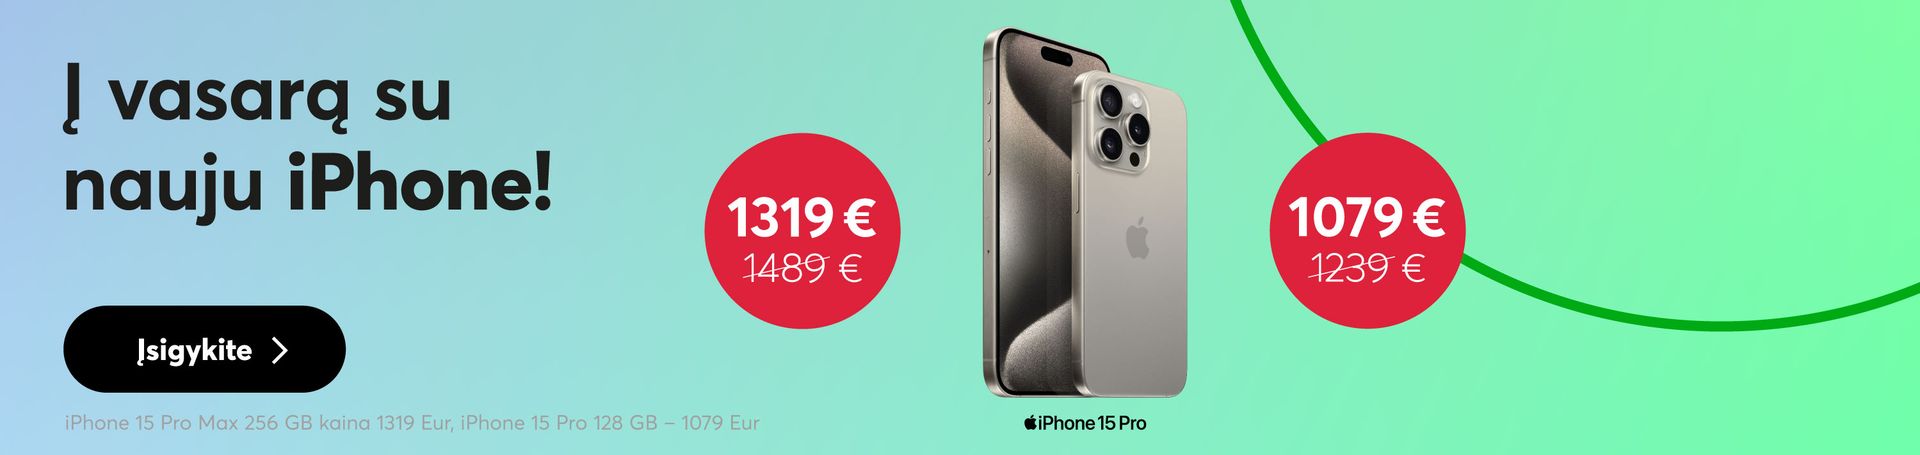 Ženkite į vasarą su nauju iPhone 15 Pro! Nuo 1079 eur.